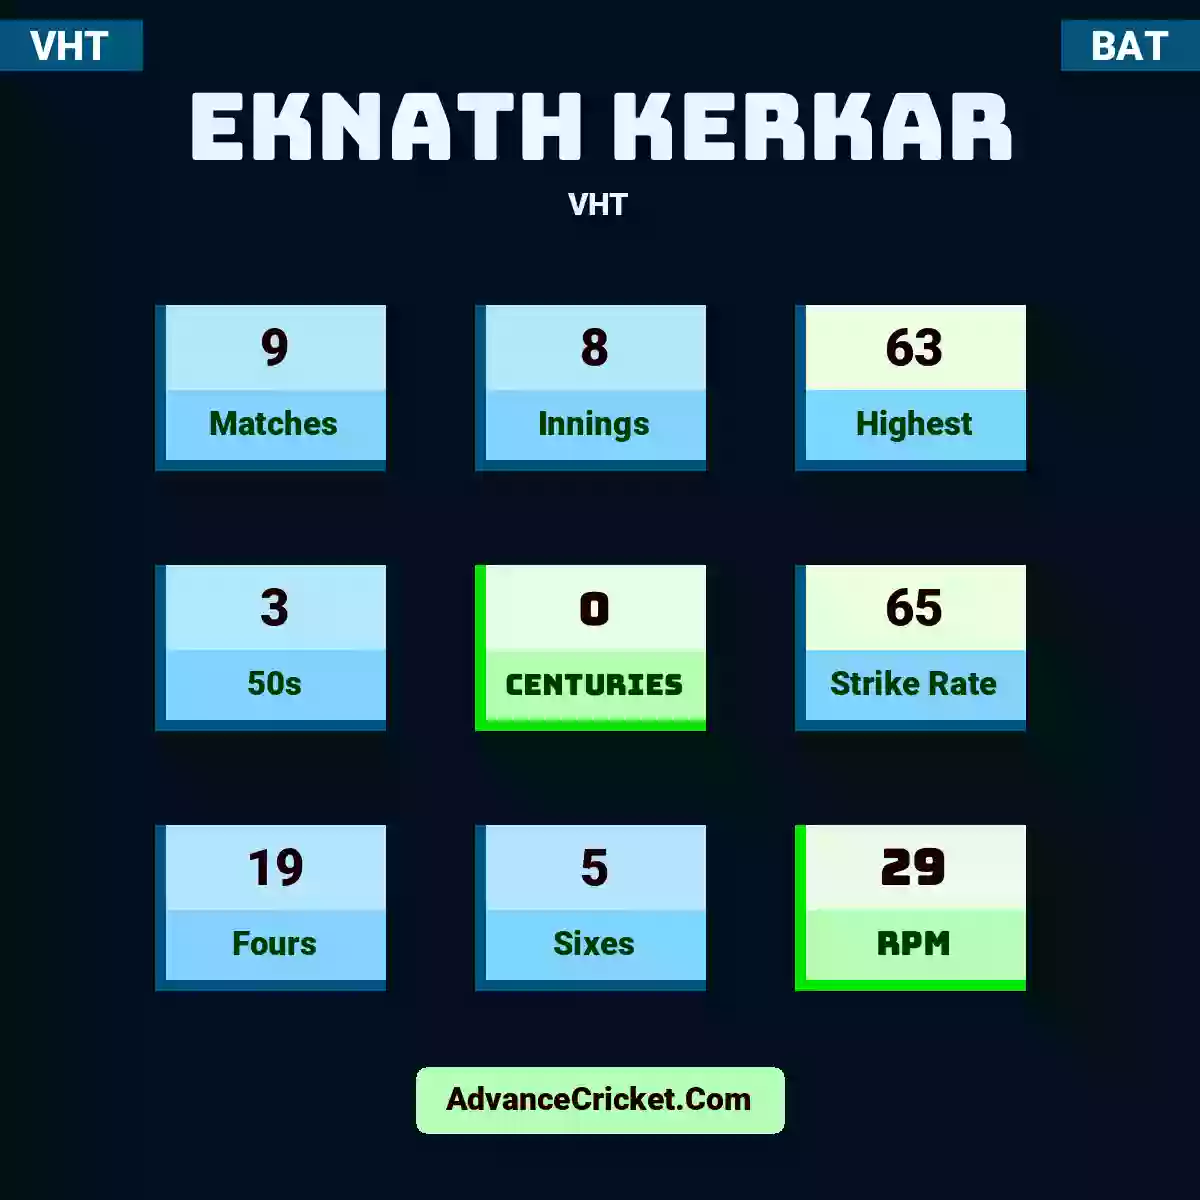 Eknath Kerkar VHT , Eknath Kerkar played 9 matches, scored 63 runs as highest, 3 half-centuries, and 0 centuries, with a strike rate of 65. E.Kerkar hit 19 fours and 5 sixes, with an RPM of 29.